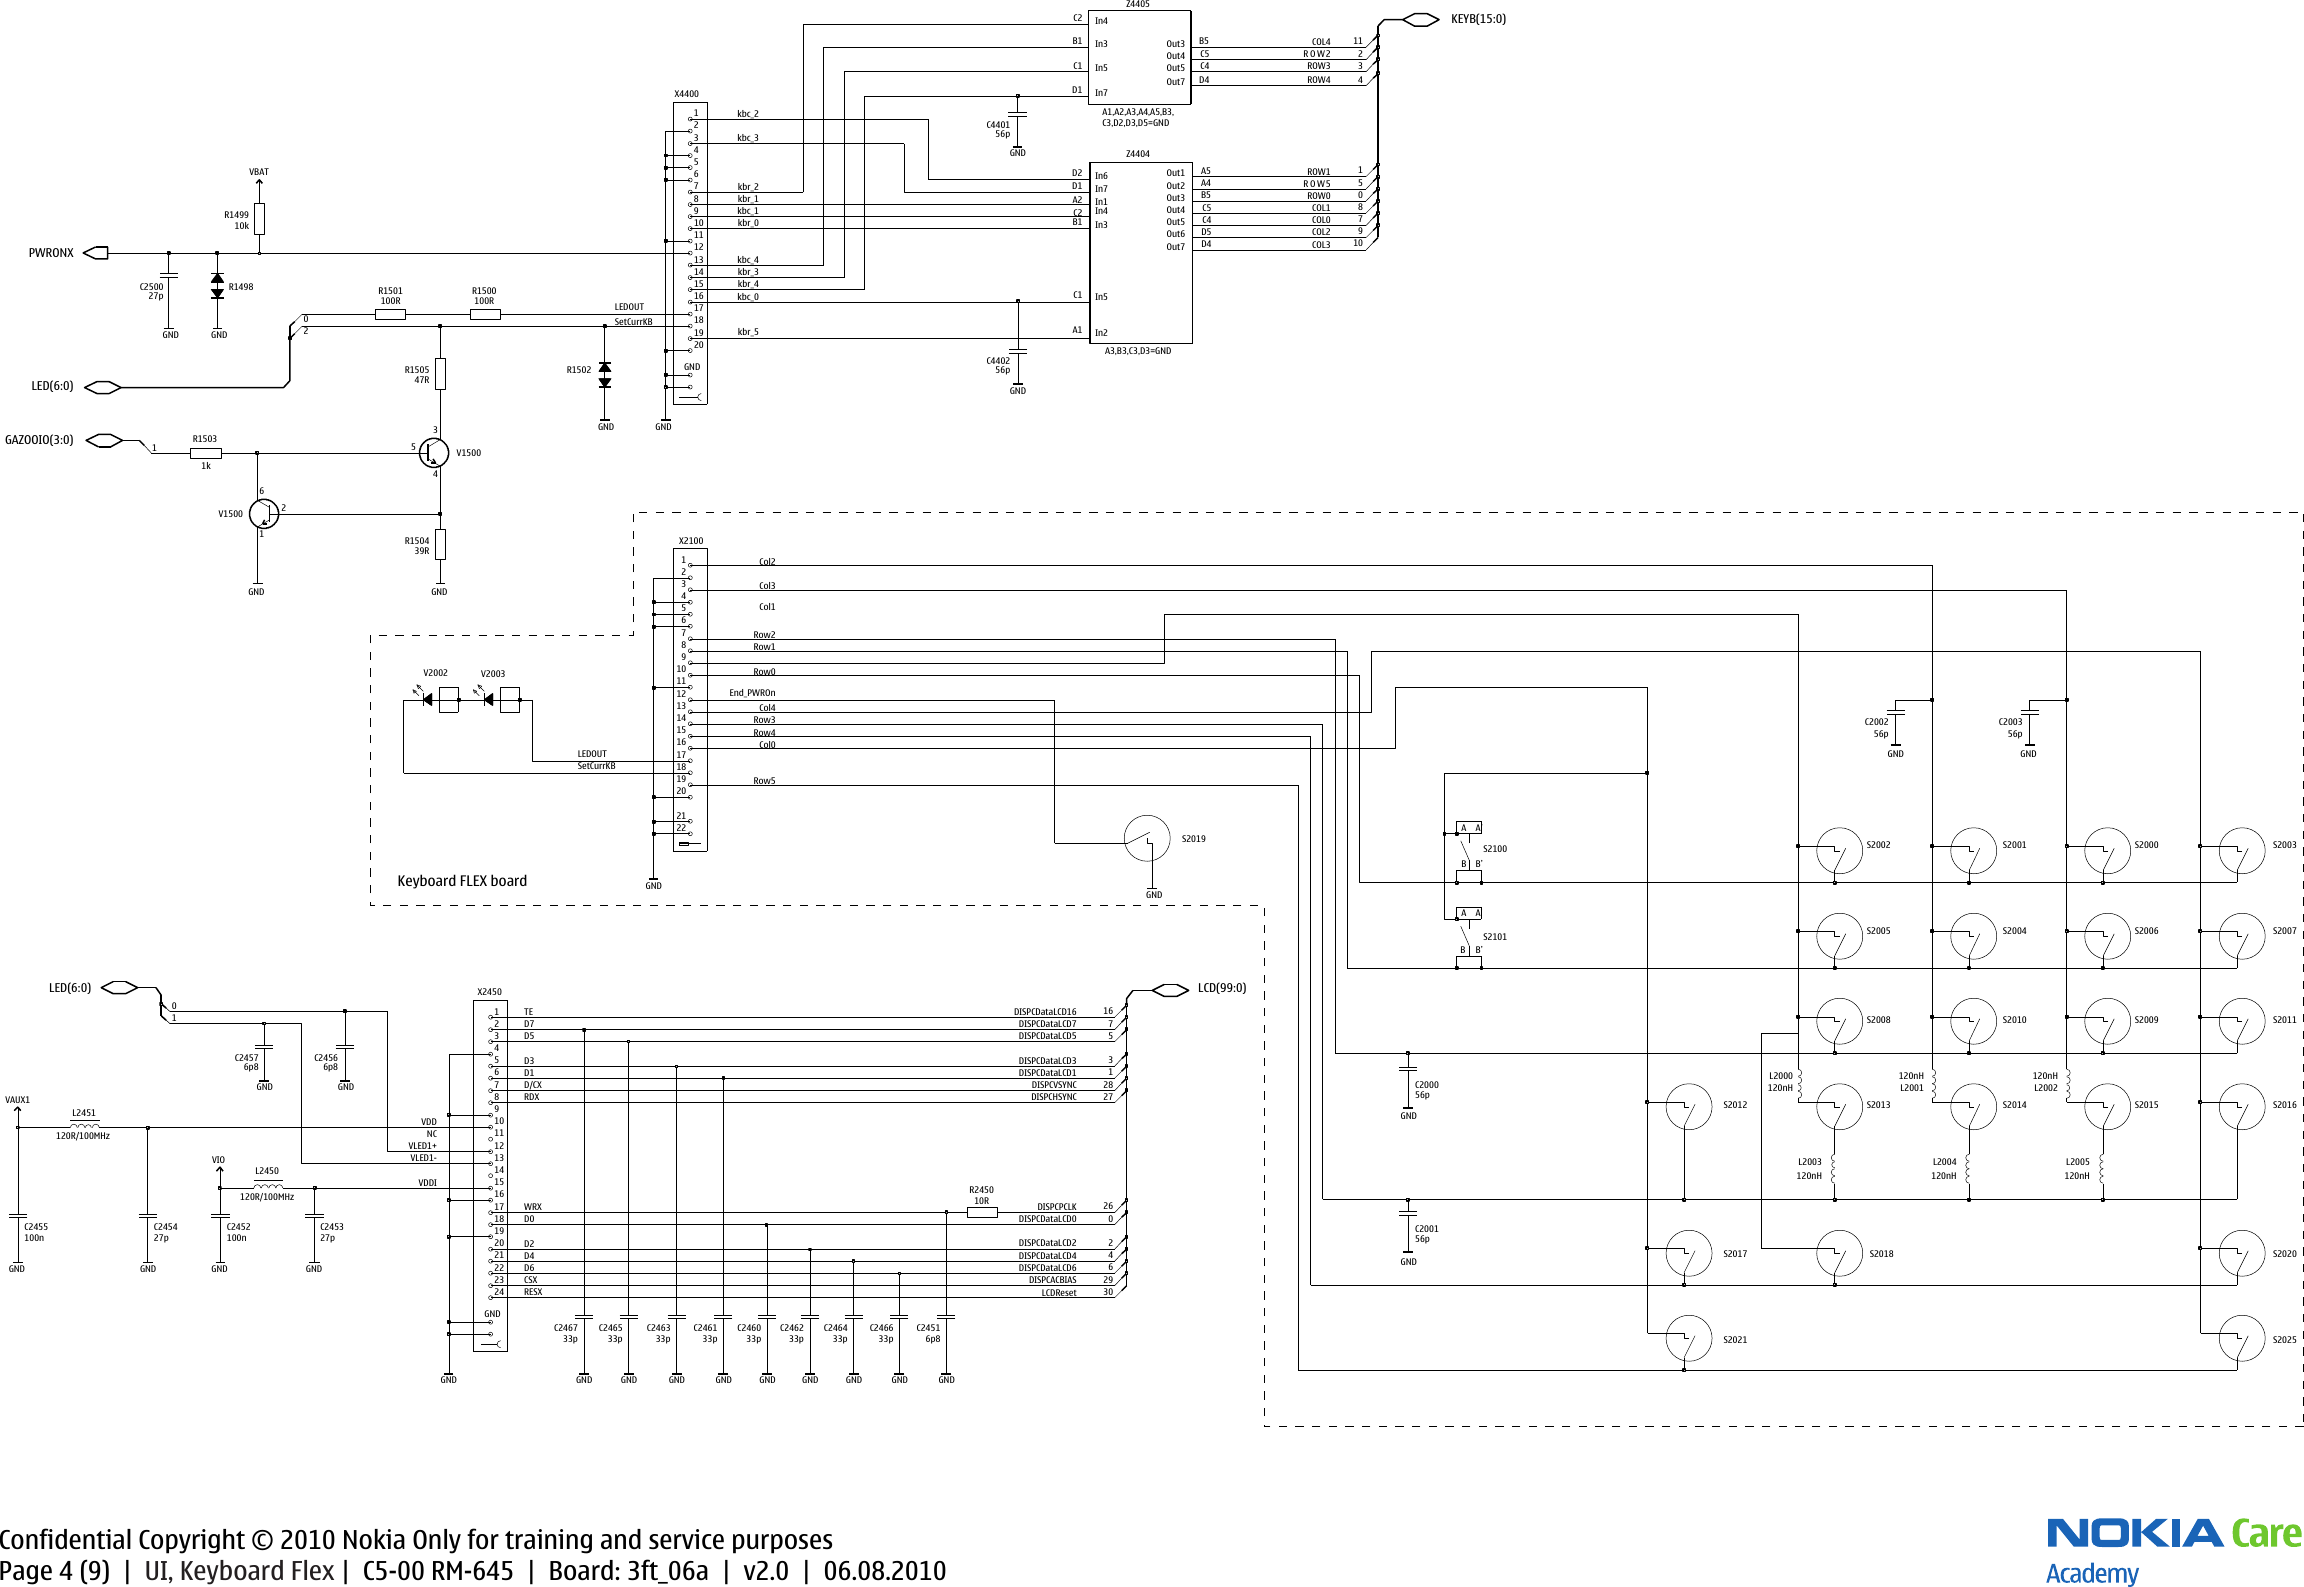 Page 4 of 10 - Nokia C5-00 RM-645 - Service Schematics. Www.s-manuals.com. Schematics V2.0